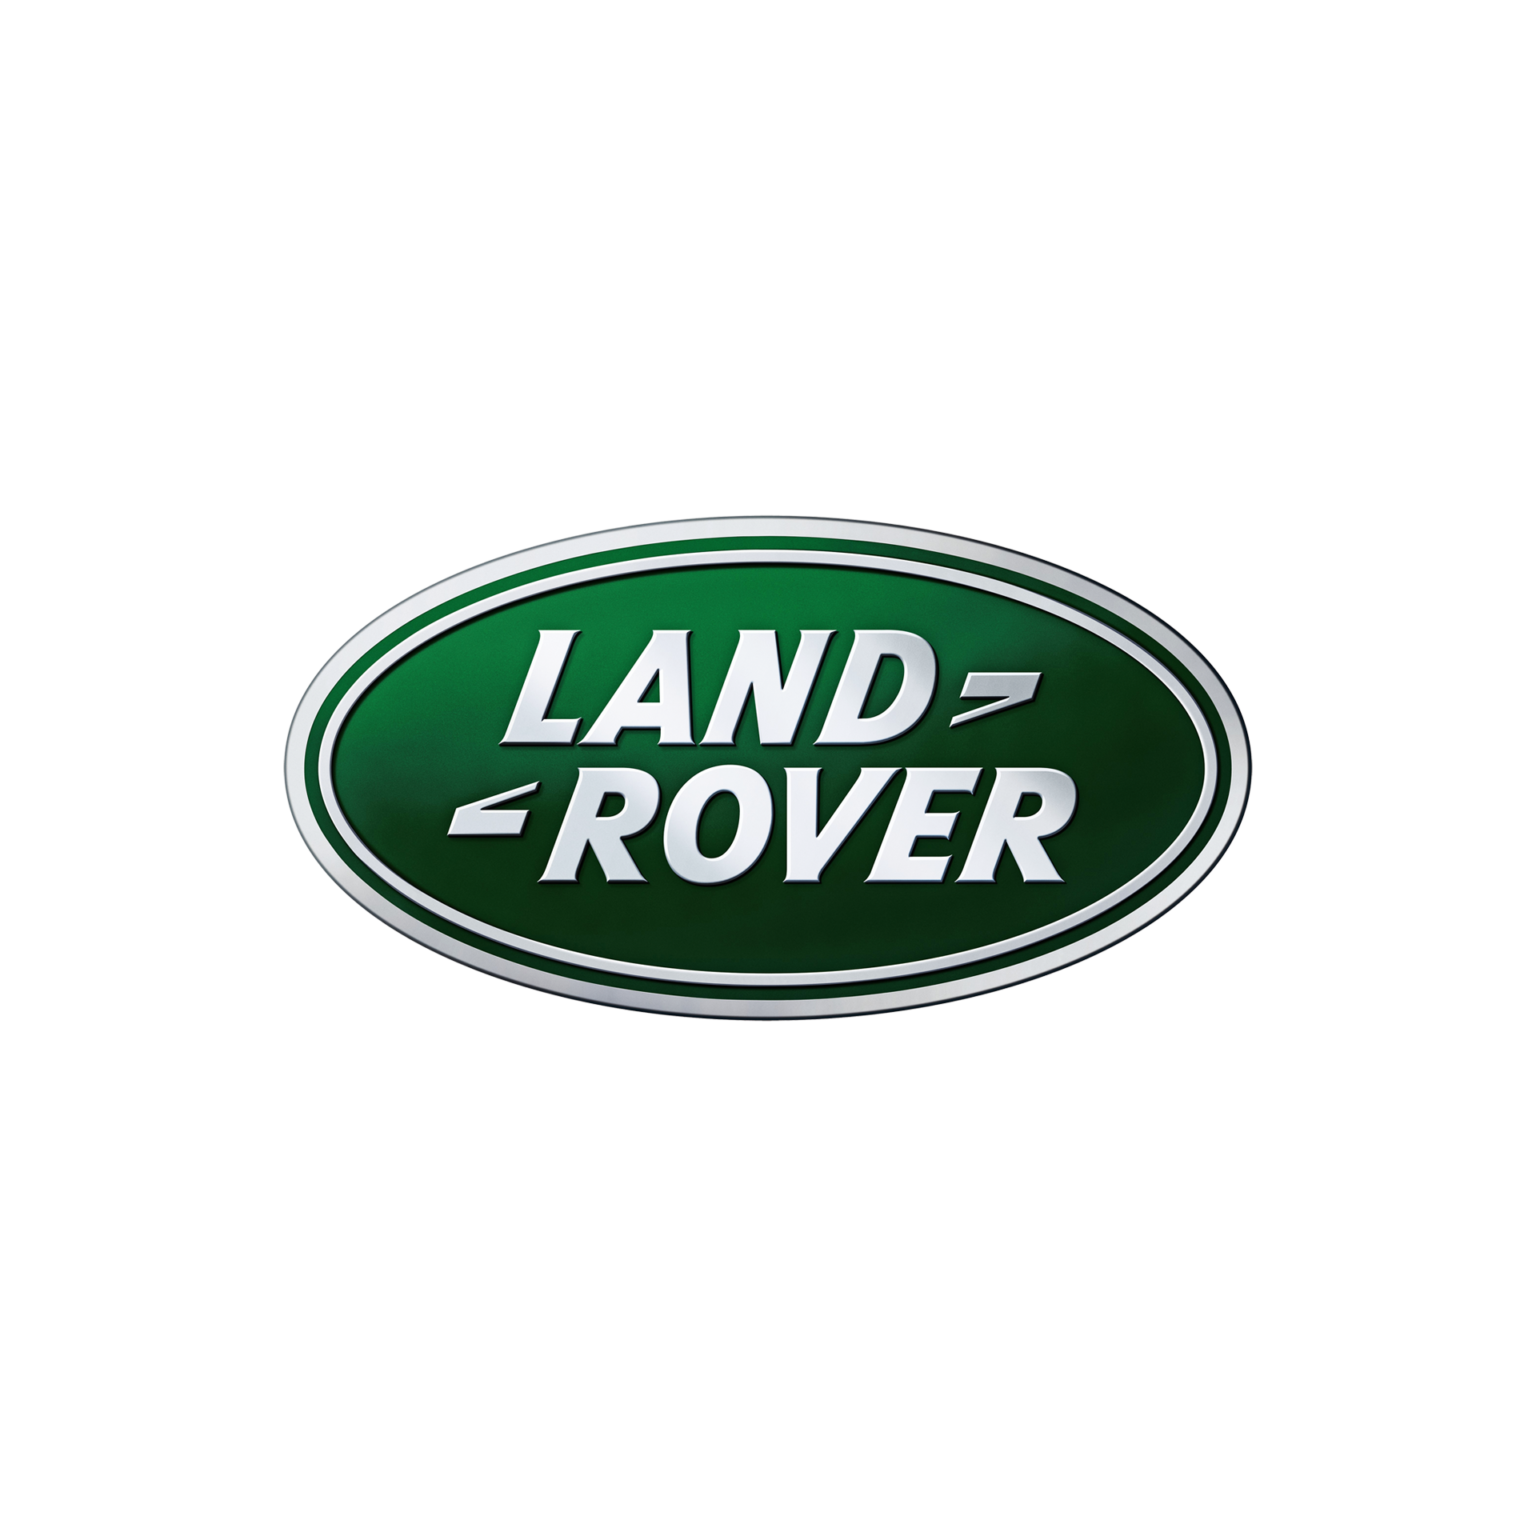 Ооо ровер. Эмблема ленд Ровер. Rover логотип. Логотип Land Rover вектор. Рендж Ровер логотип.